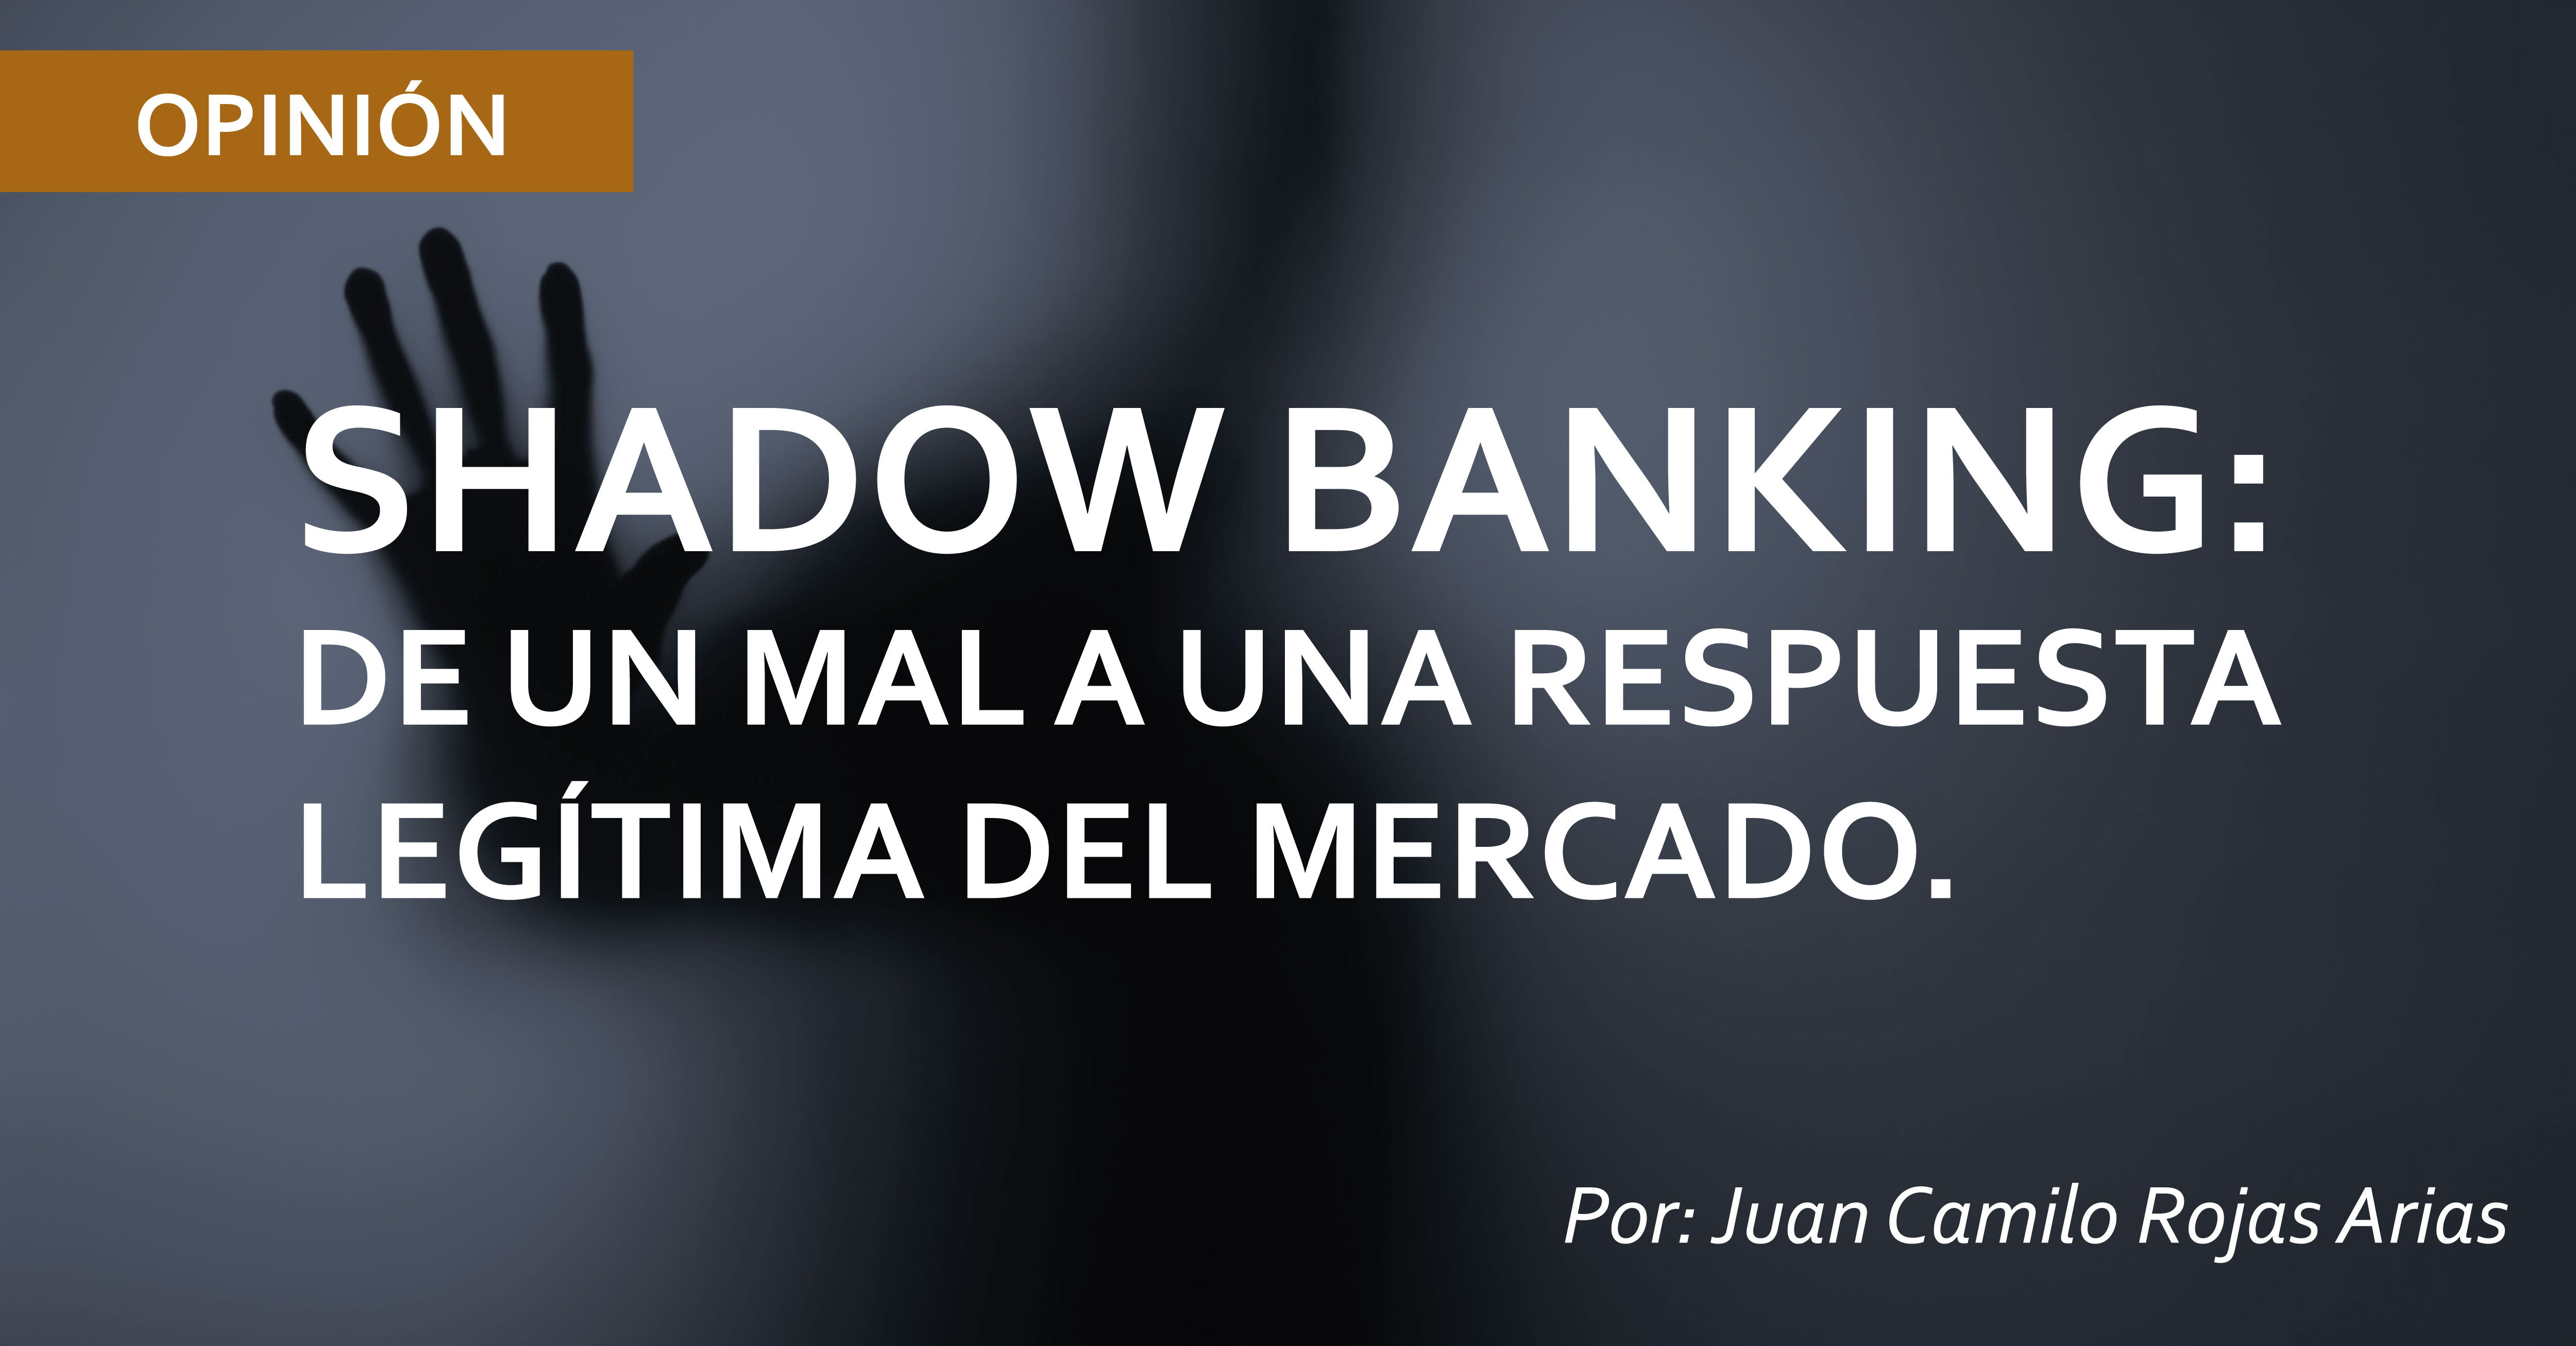 SHADOW BANKING: DE UN MAL A UNA RESPUESTA LEG